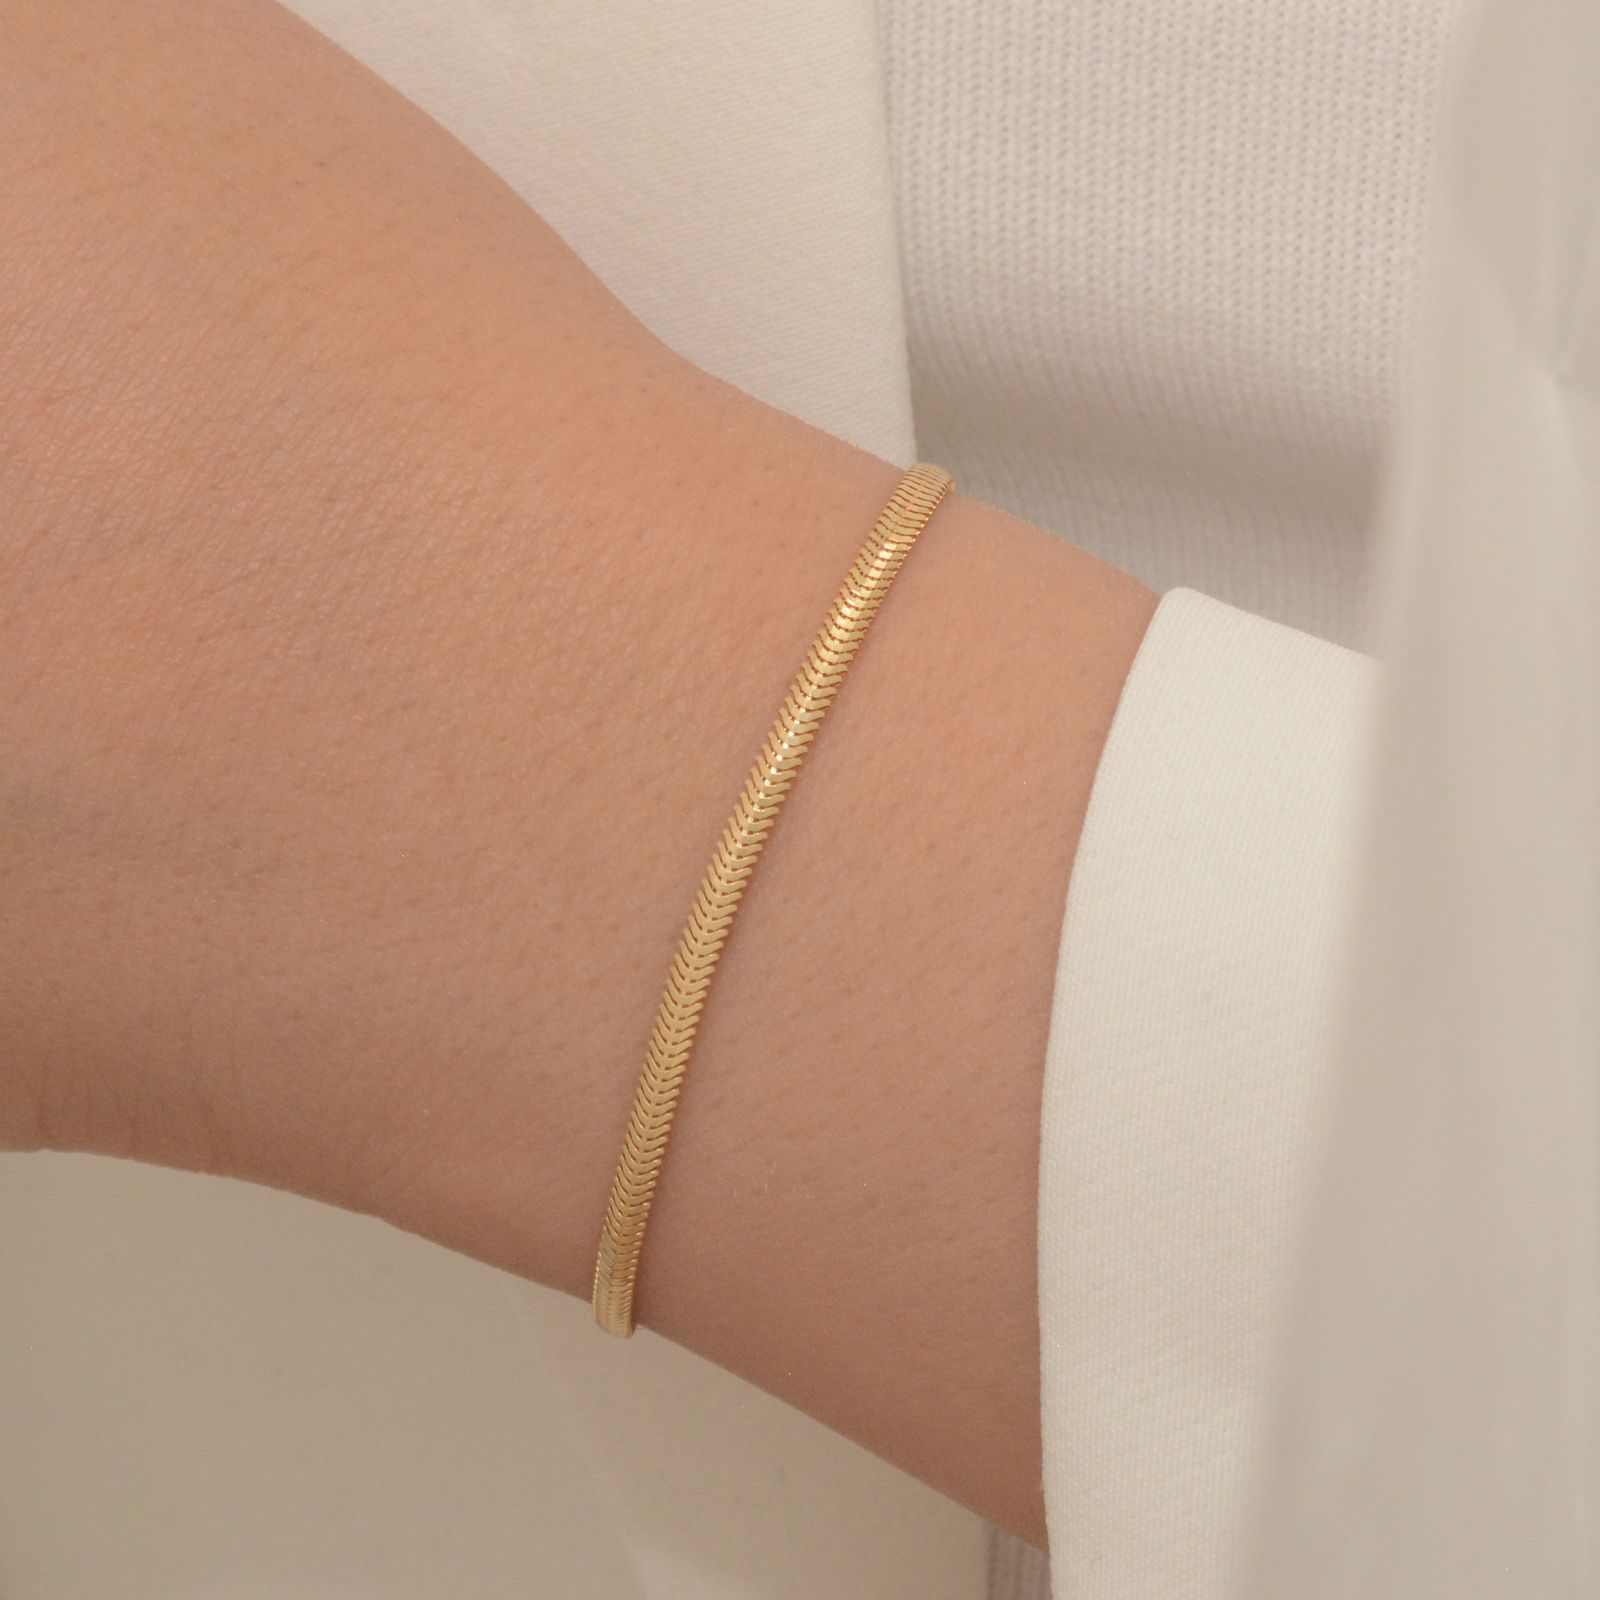 دستبند طلا 18 عیار زنانه طلای مستجابی مدل هرینگبون سه بعدی کد M17 -  - 2